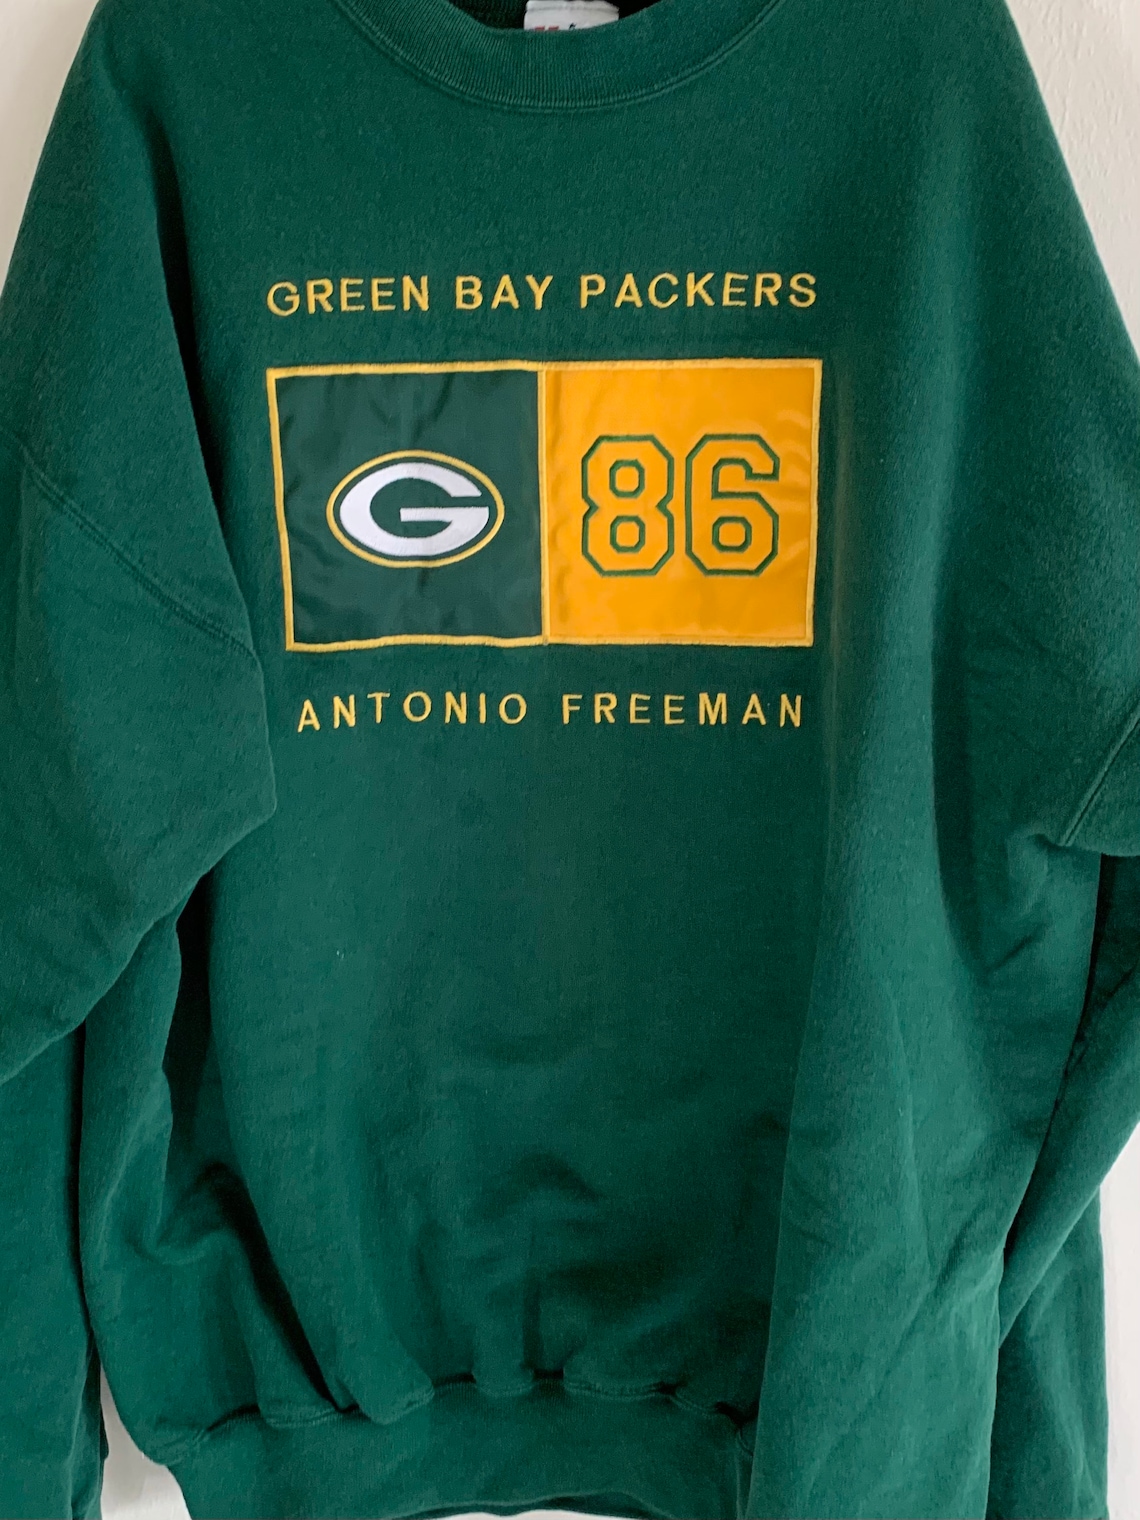 Green Bay Packers Vintage retro 90s Antonio Freeman Crewneck | Etsy